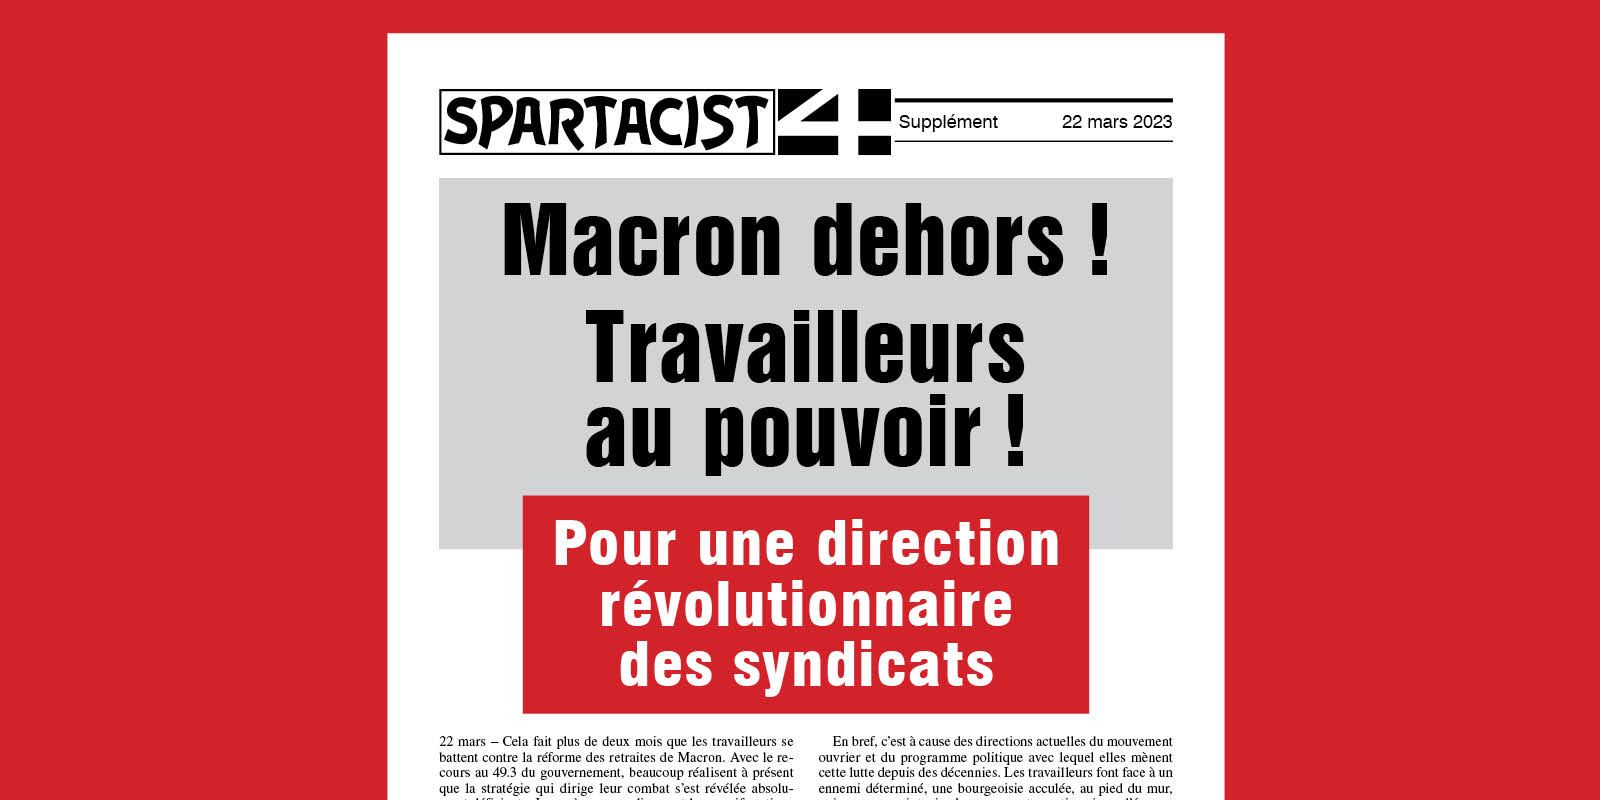 Macron dehors ! Travailleurs au pouvoir ! Pour une direction révolutionnaire des syndicats